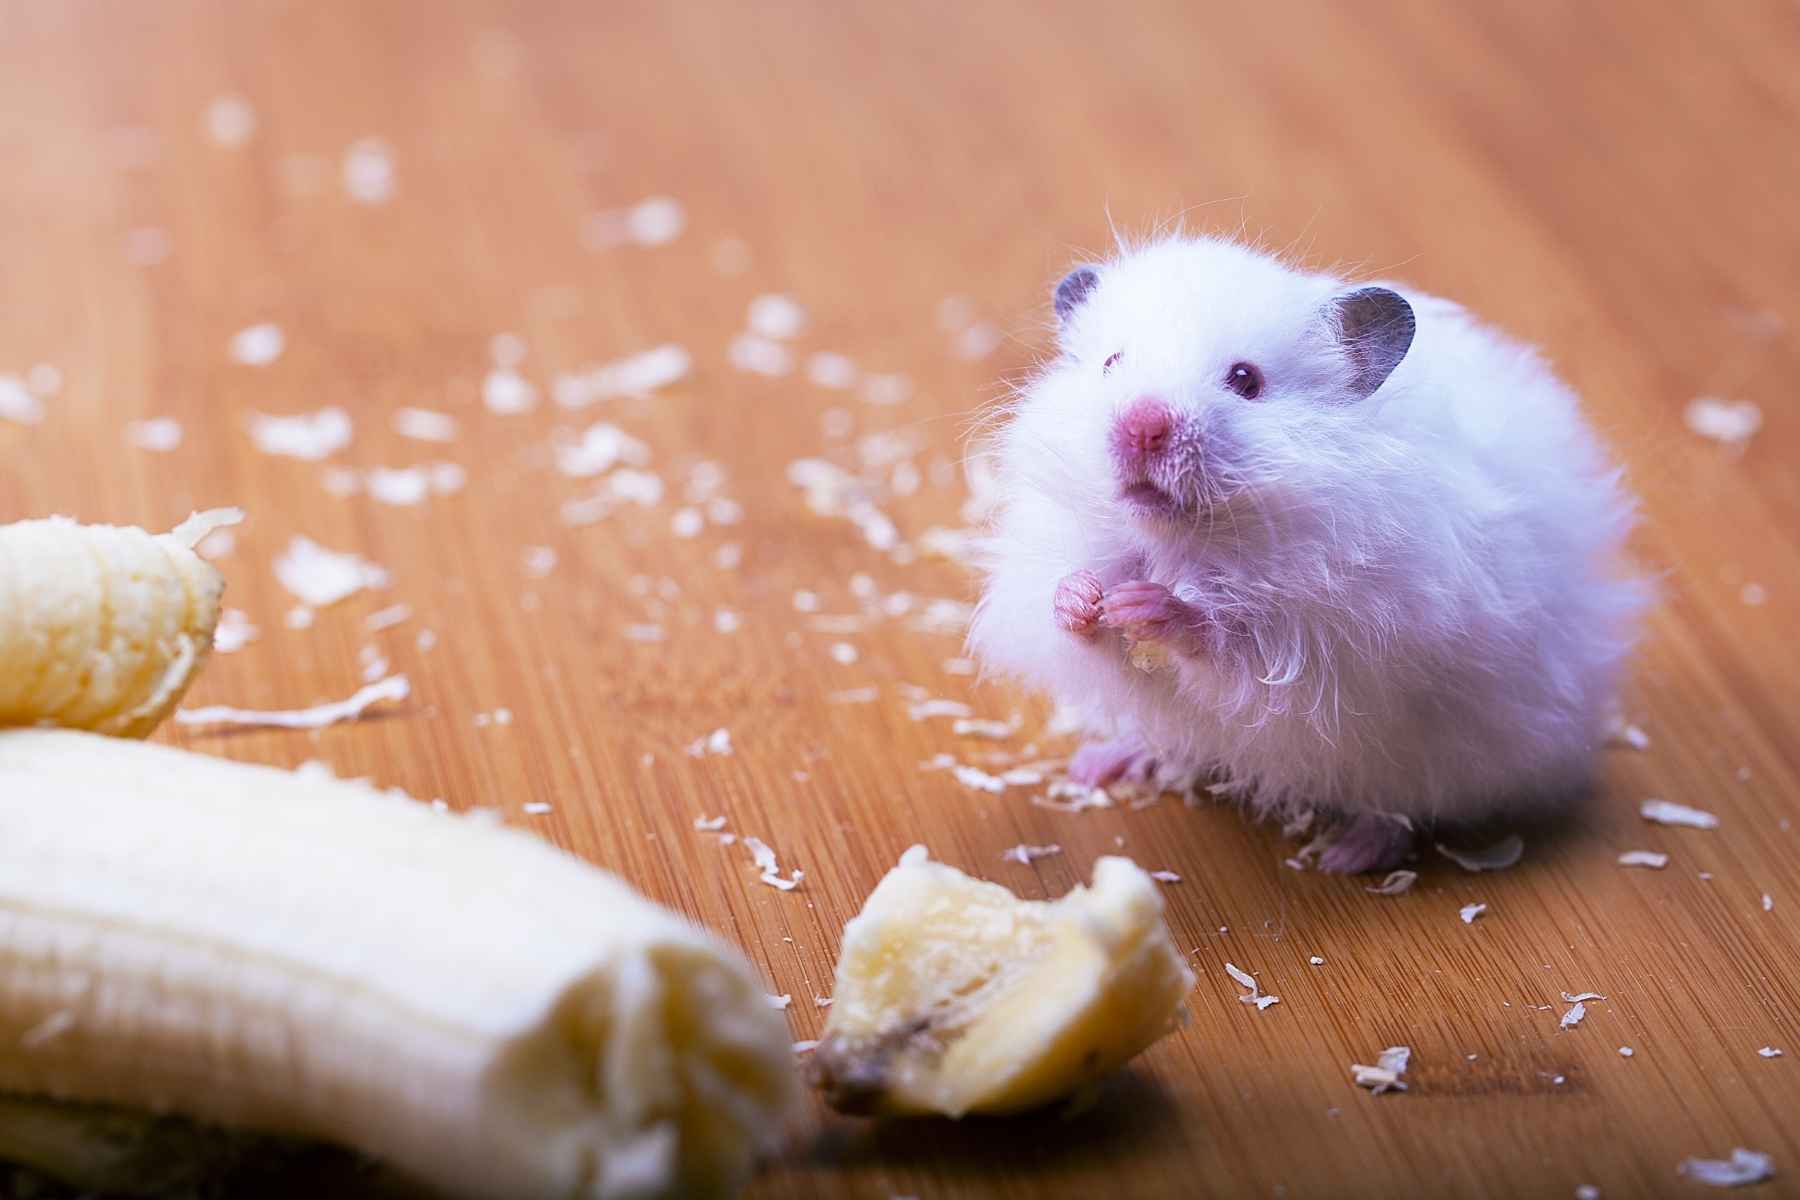 White hamster eating a banana